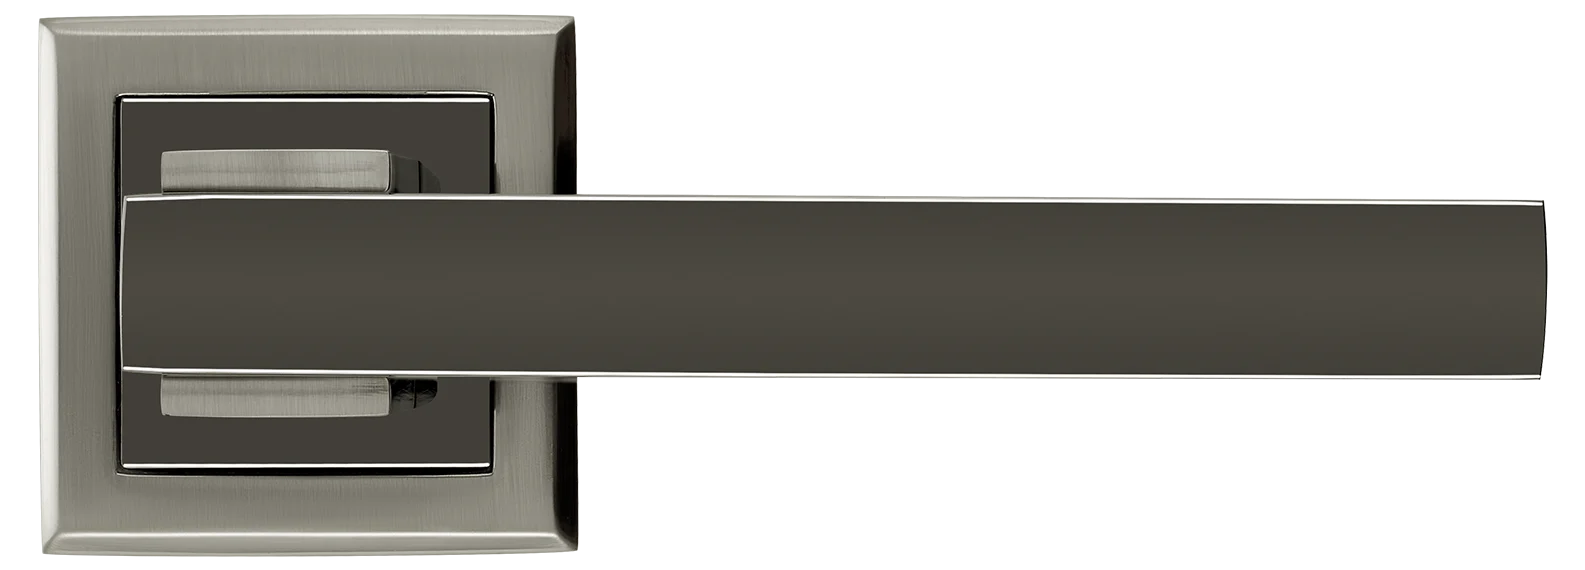 PIQUADRO, ручка дверная MH-37 SN/BN-S, на квадратной накладке, цвет - бел. никель/черн. никель фото купить в Минске